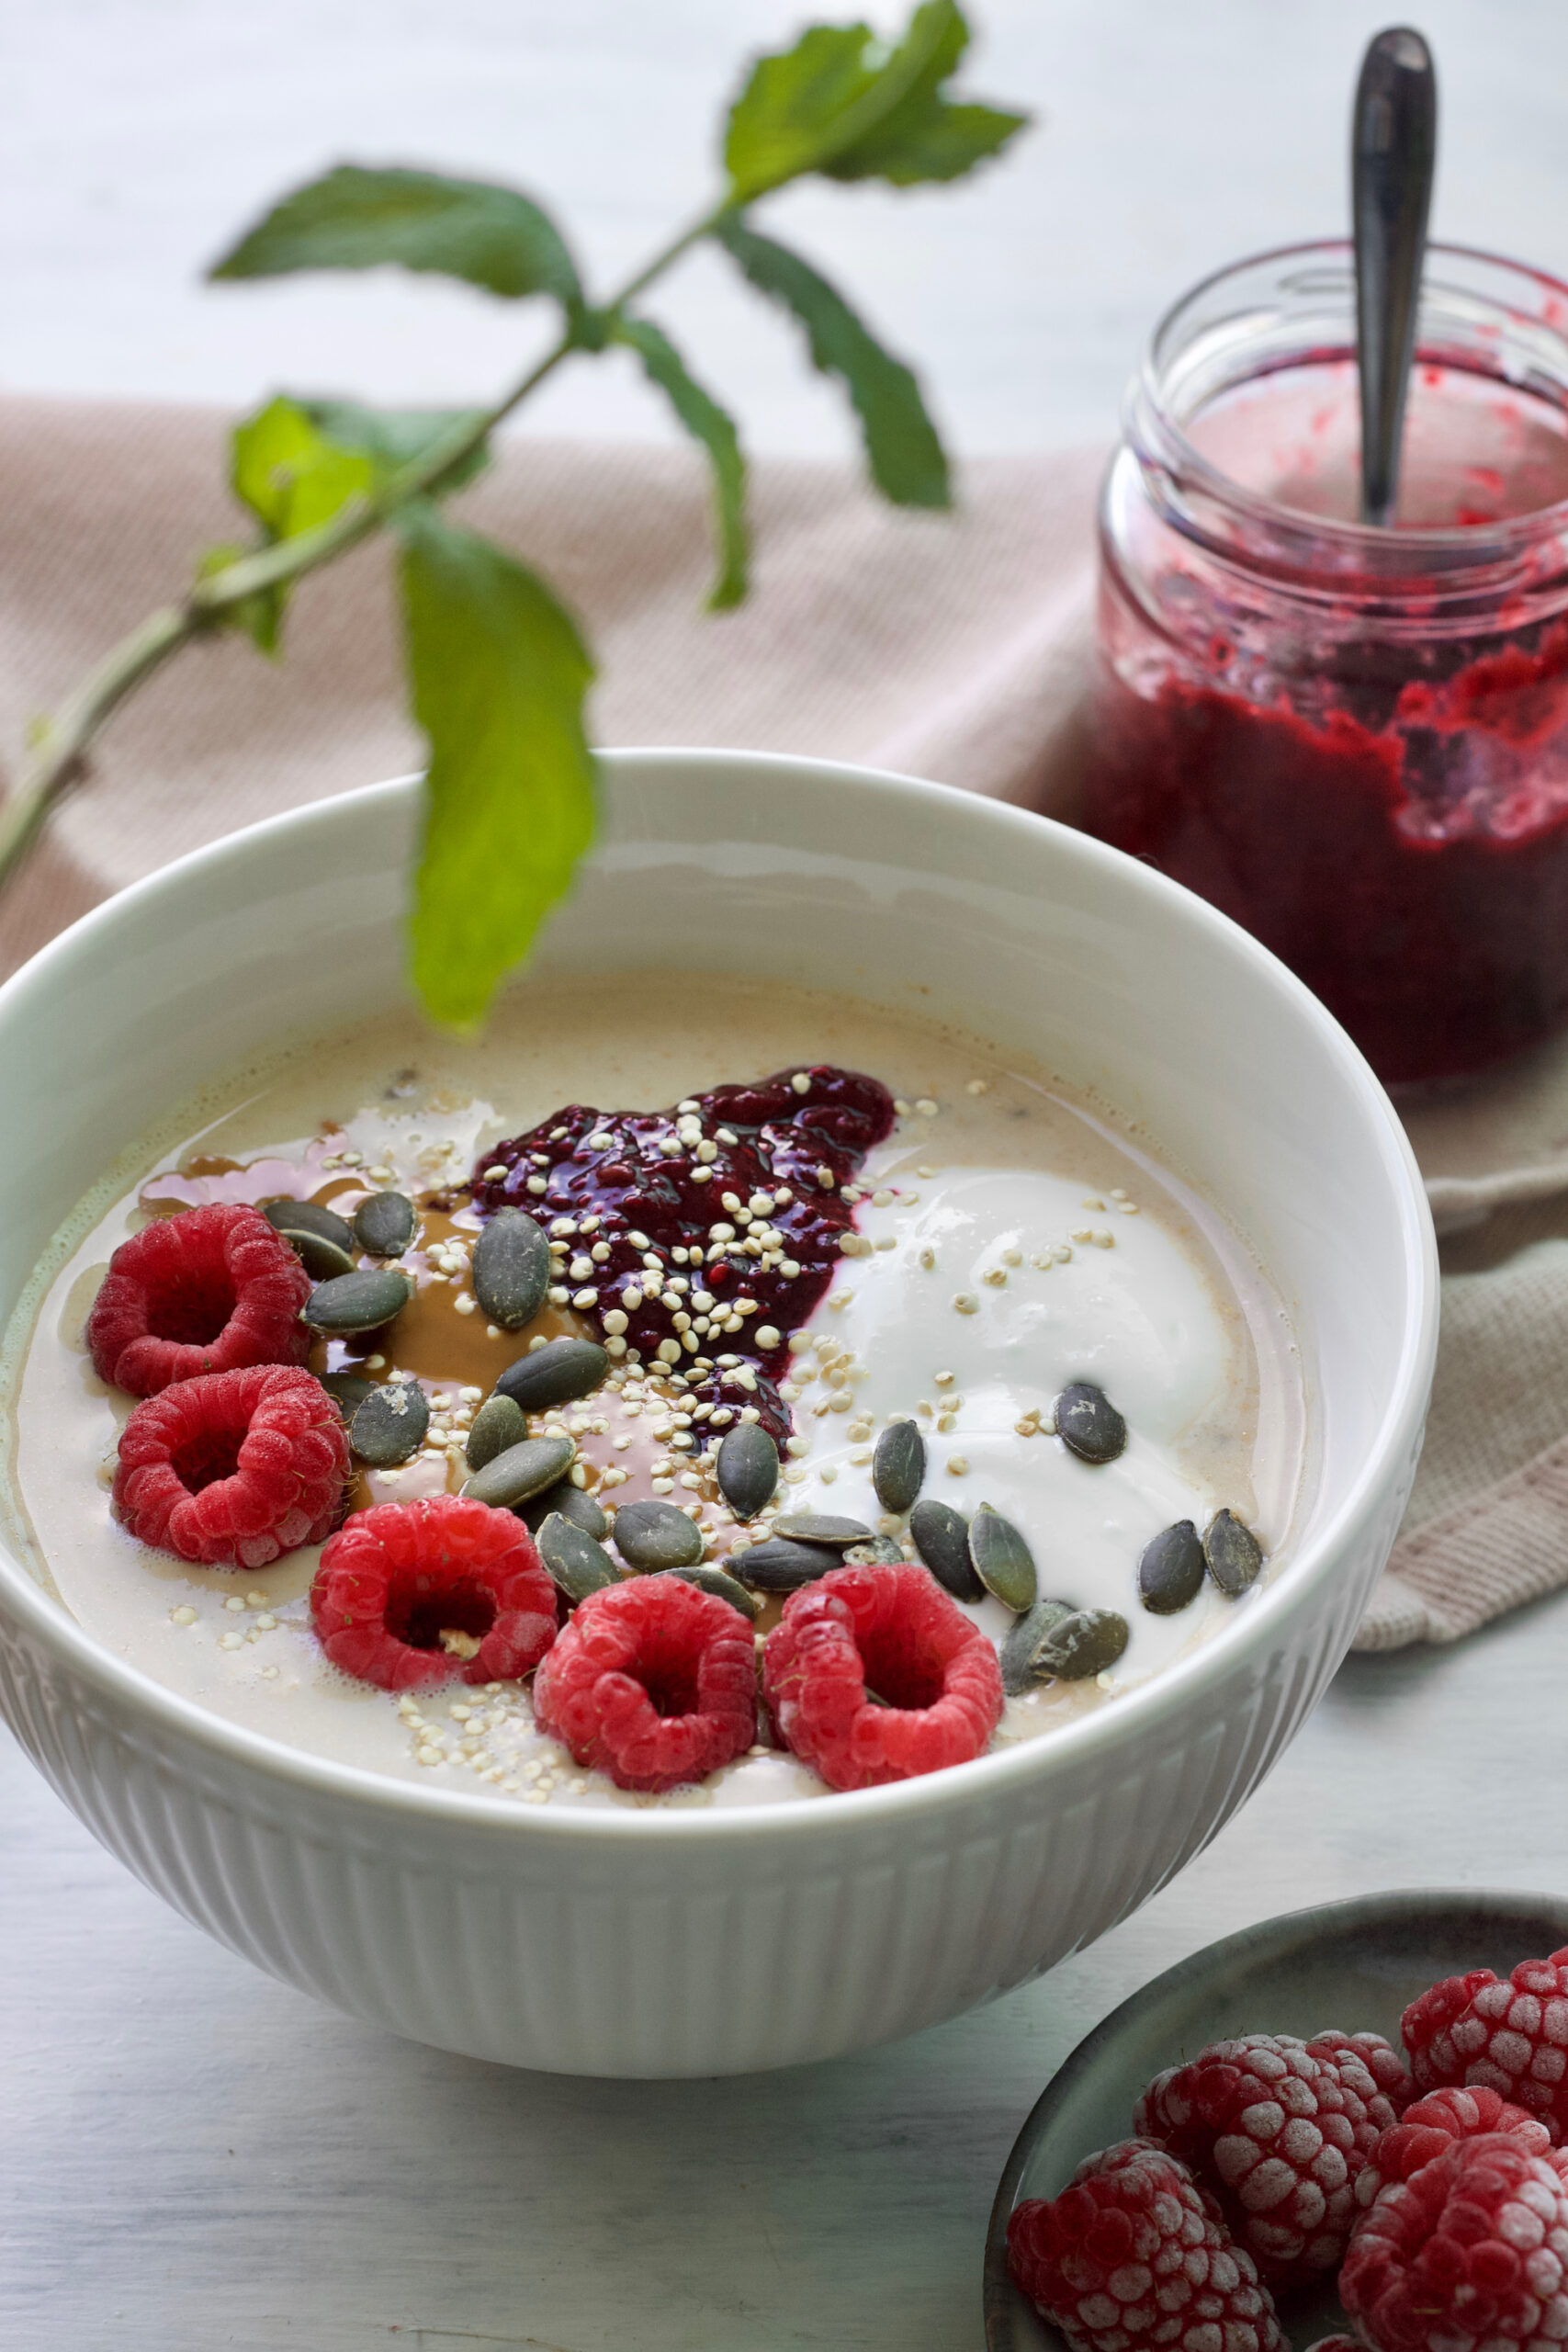 Healthy-vegan-overnight oats-jam-red berries-saudável-aveia adormecida-compota-frutos vermelhos-6